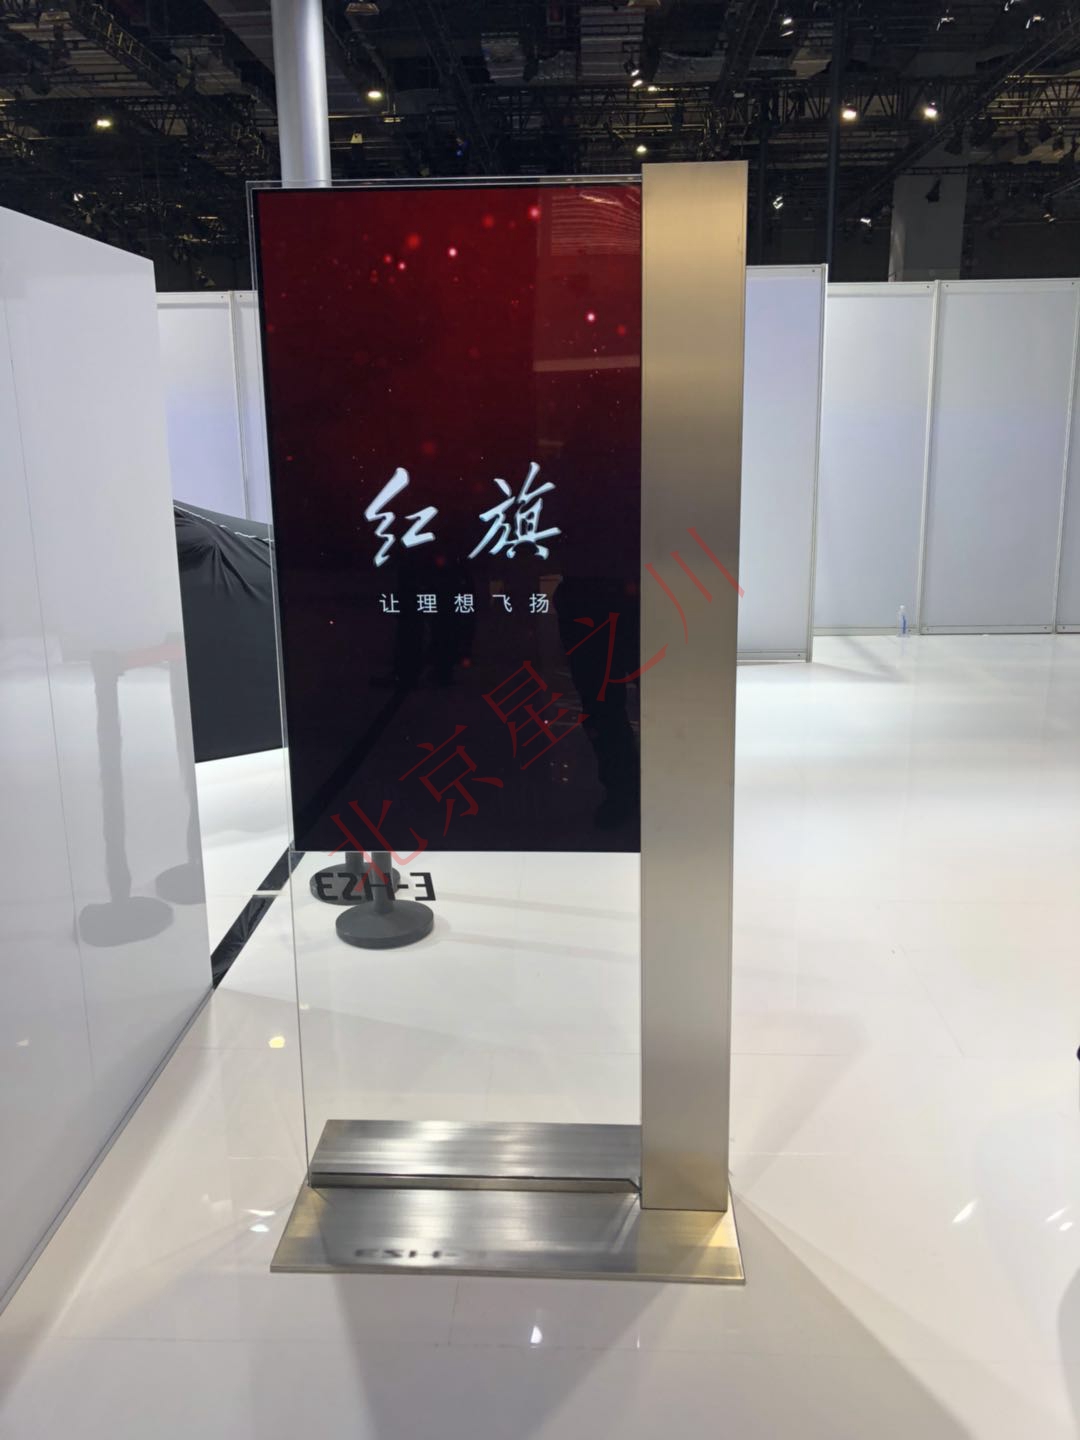 上海车展 红旗展厅采用55寸双面OLED超薄显示屏(图2)